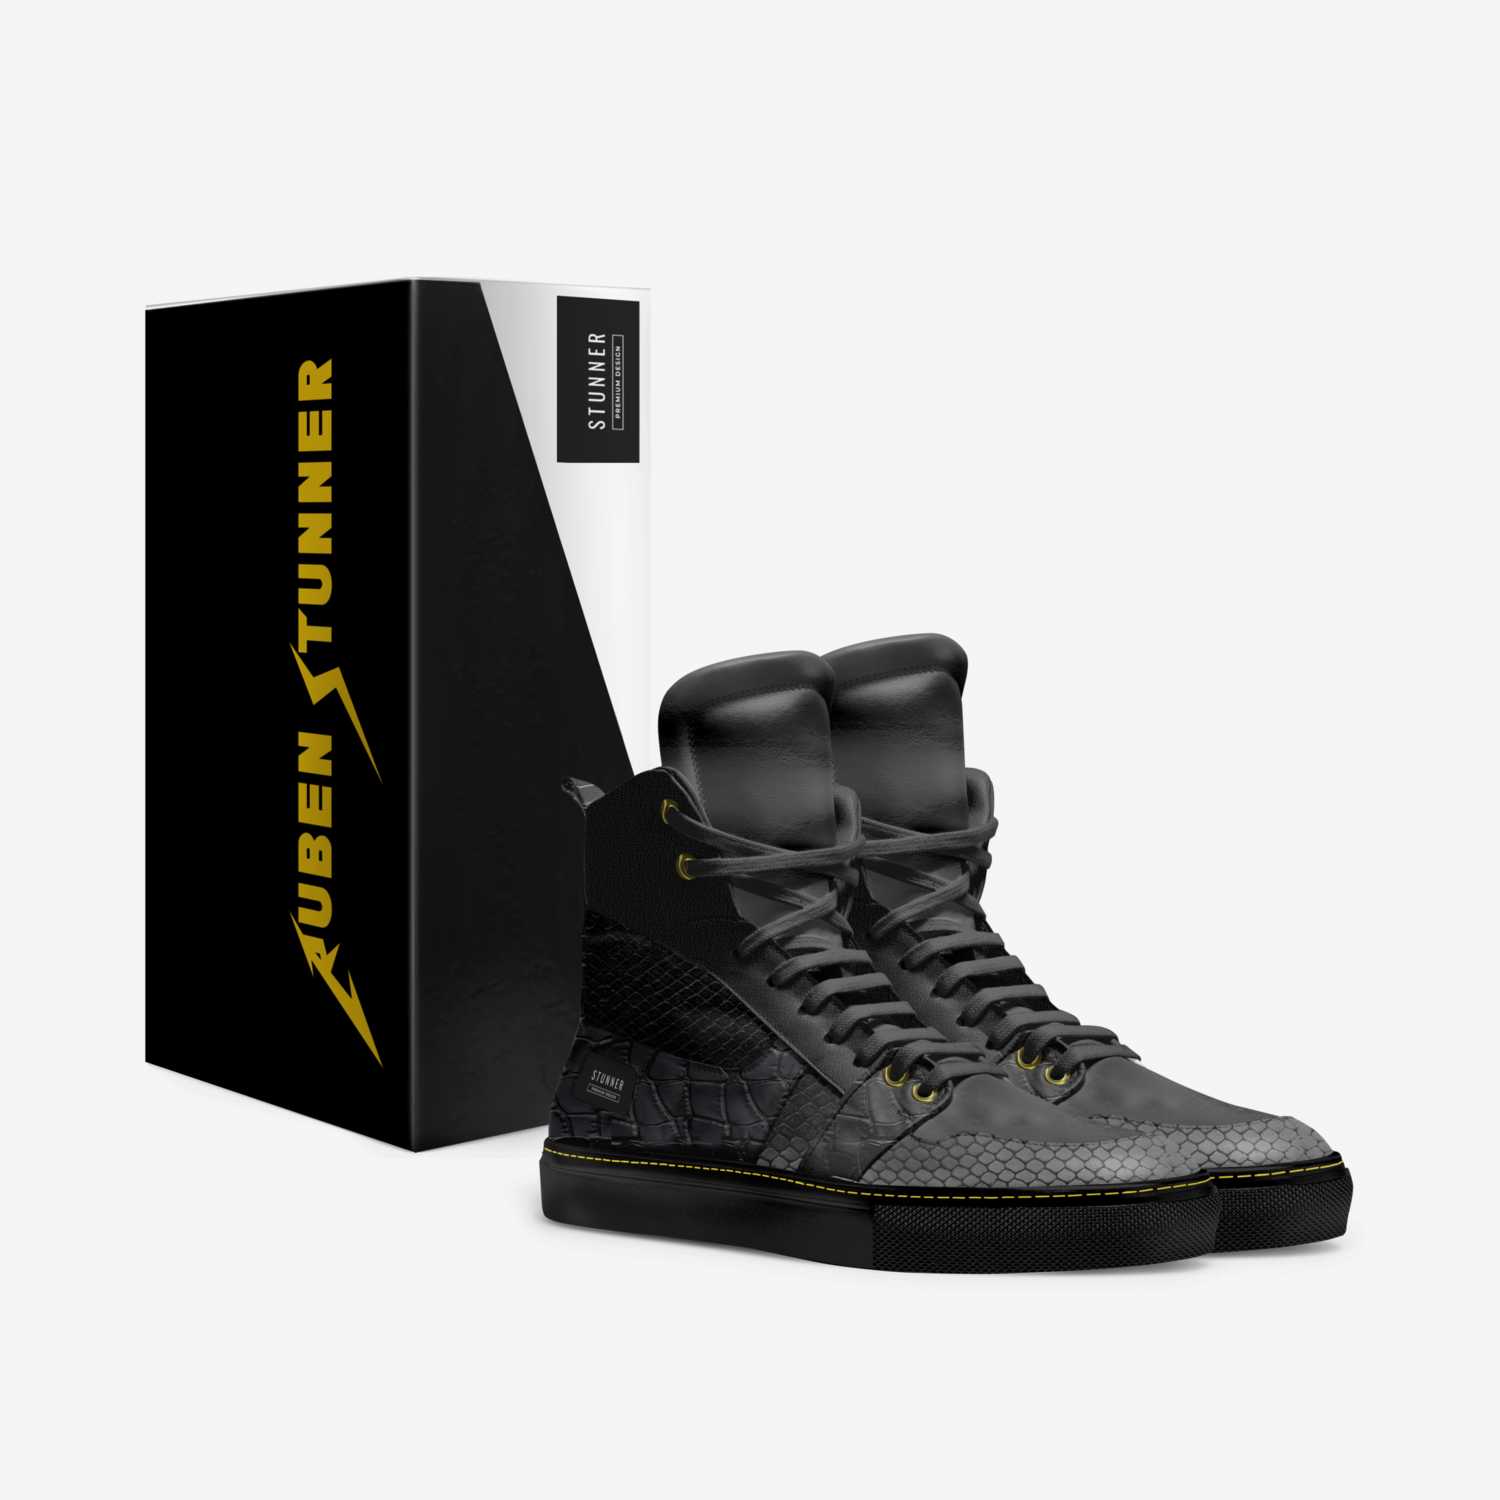 S T U N N E R custom made in Italy shoes by Ruben Stunner | Box view